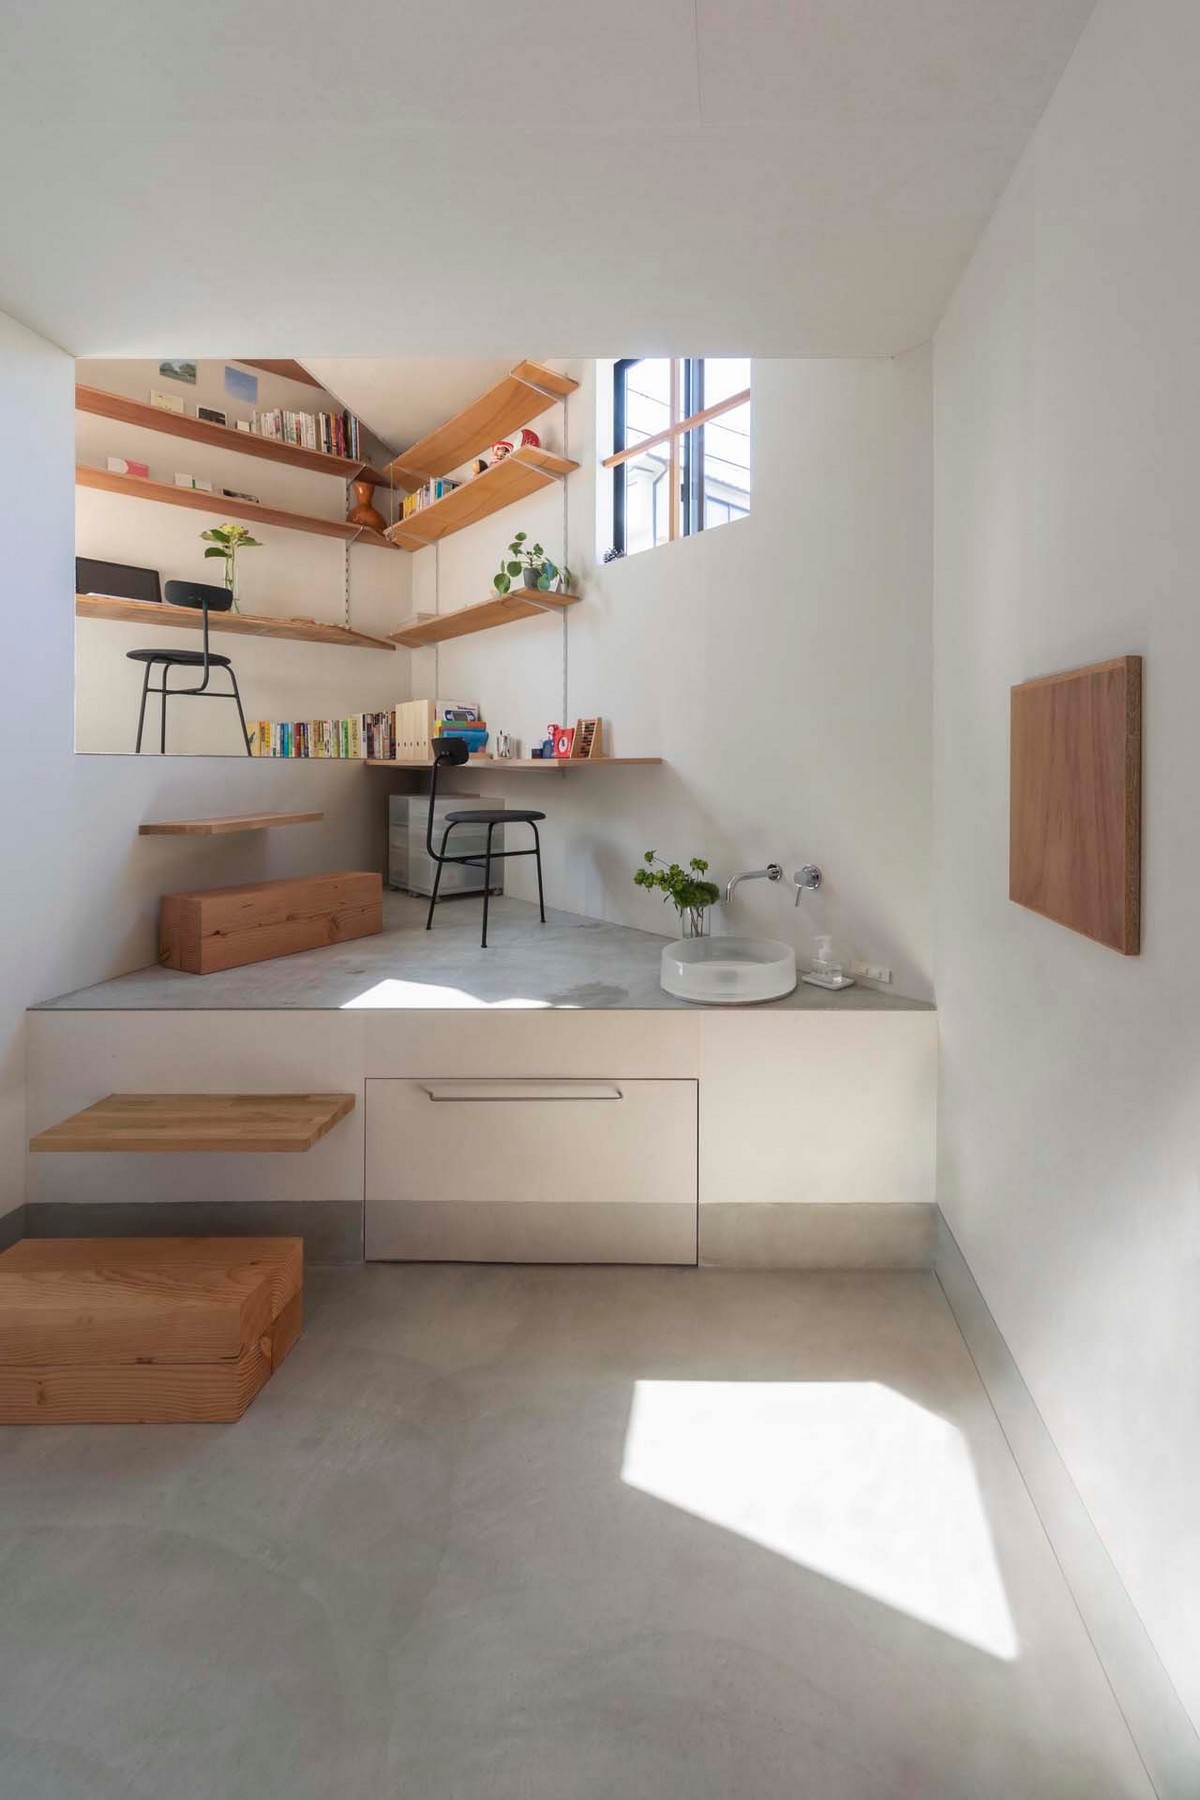 Небольшой дом с разными уровнями в Японии чтобы, использовать, разных, которые, этажей, внутри, между, создать, композицию, дизайн, соответствии, архитекторы, Такацуки, впервые, уровни, этого, встретиться, пространства, небольшого, жизнь